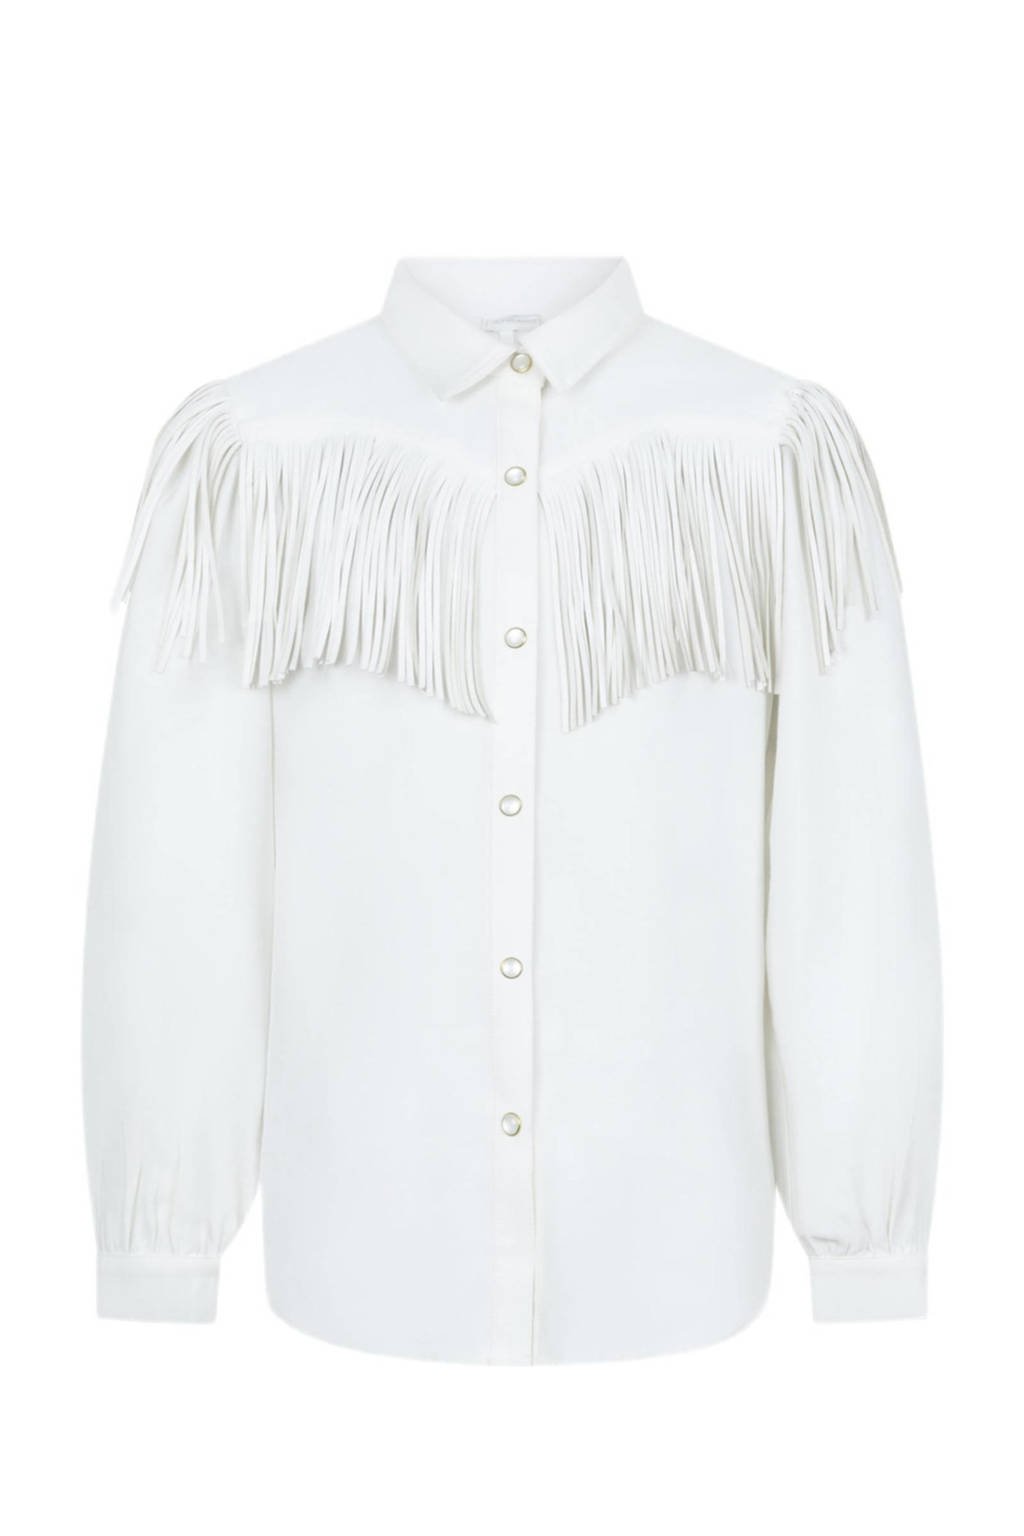 blouse Coline met franjes wit